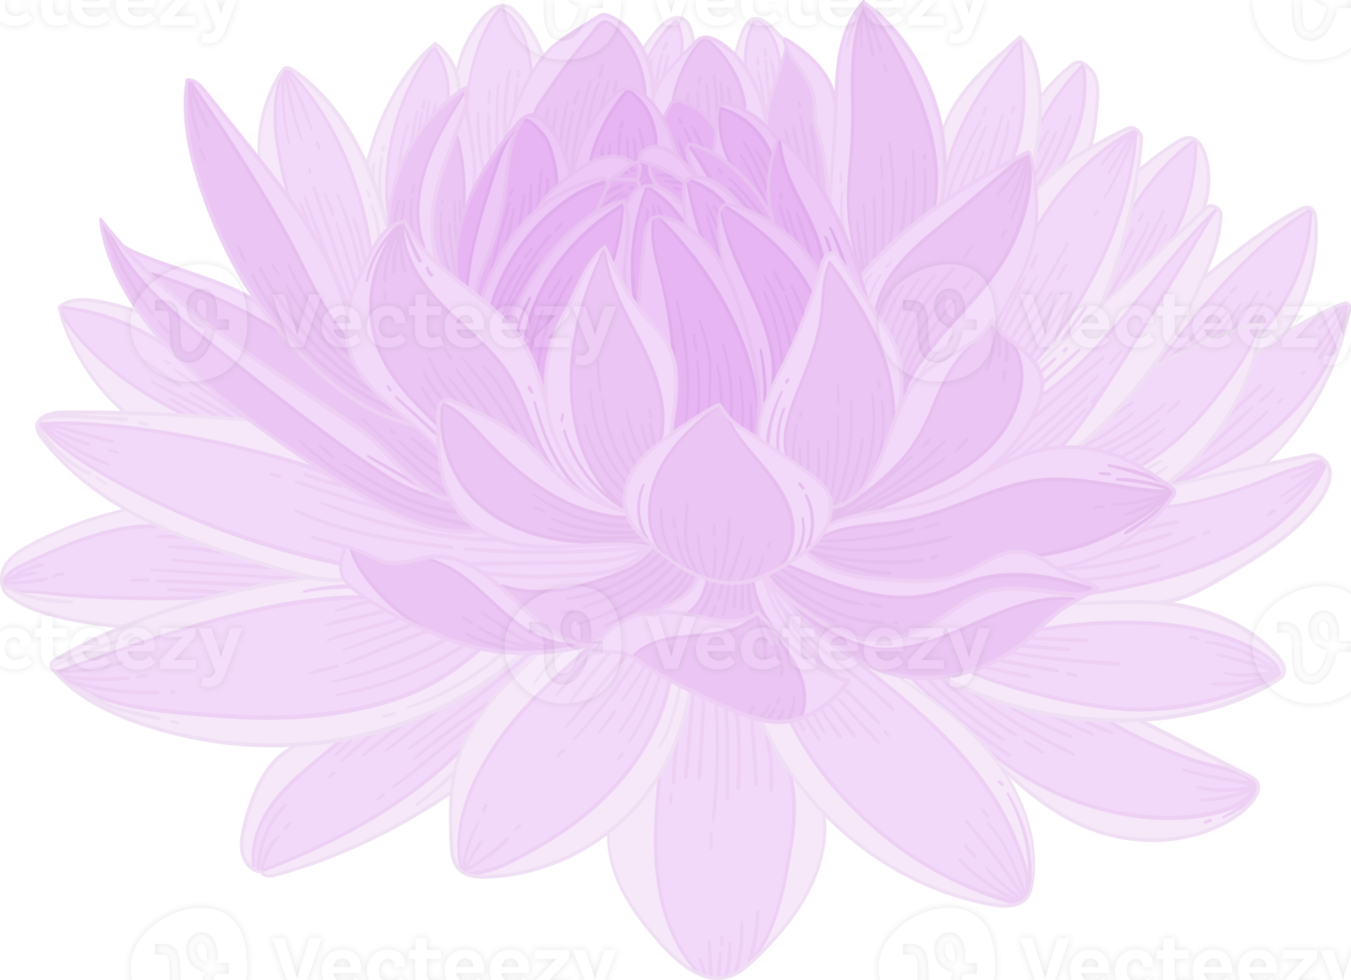 illustration dessinée à la main de fleur de dahlia violet. png